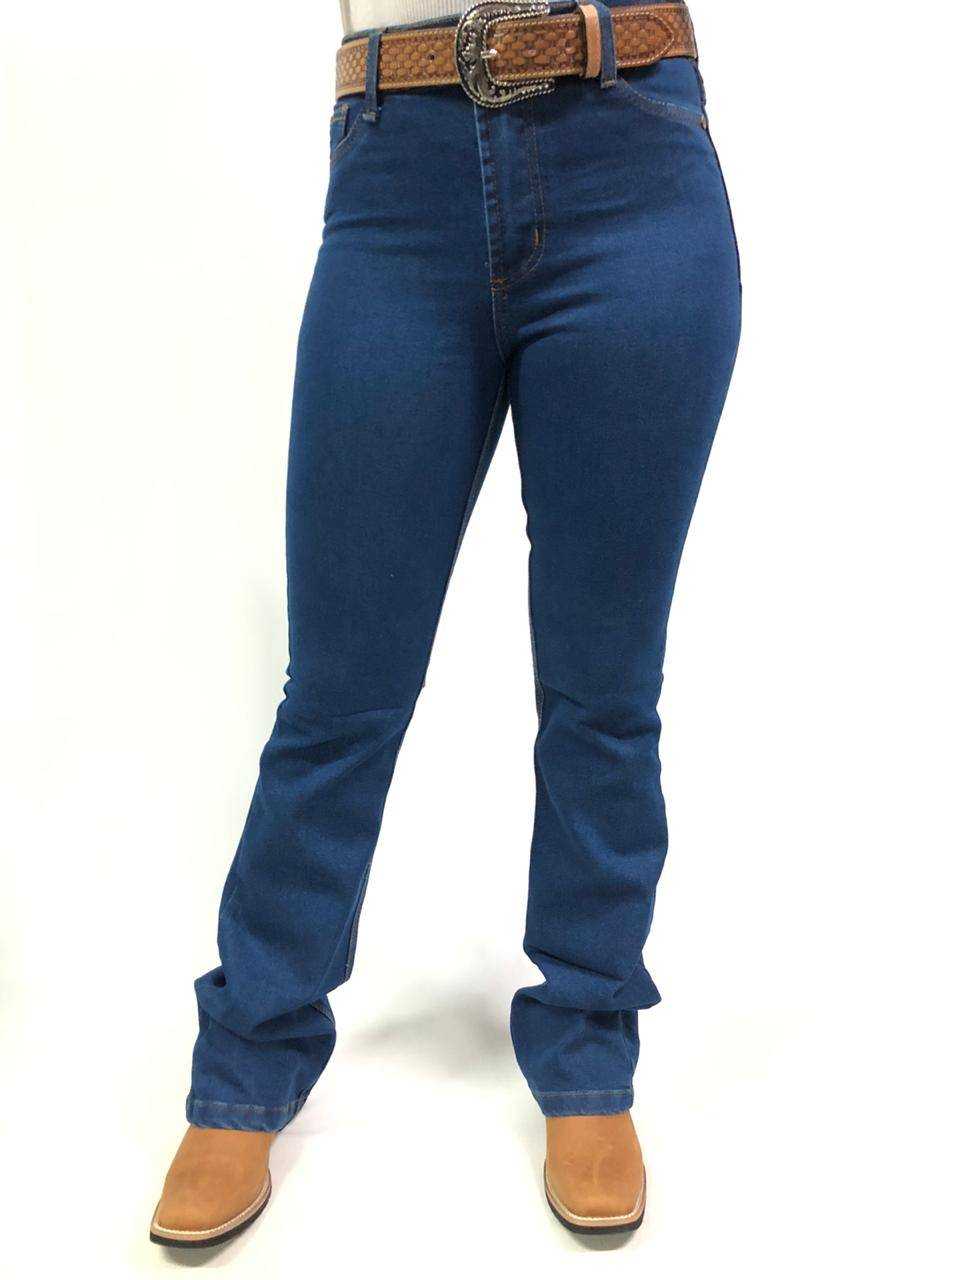 Calça Jeans Country Feminina For Texas Azul Escura Flare